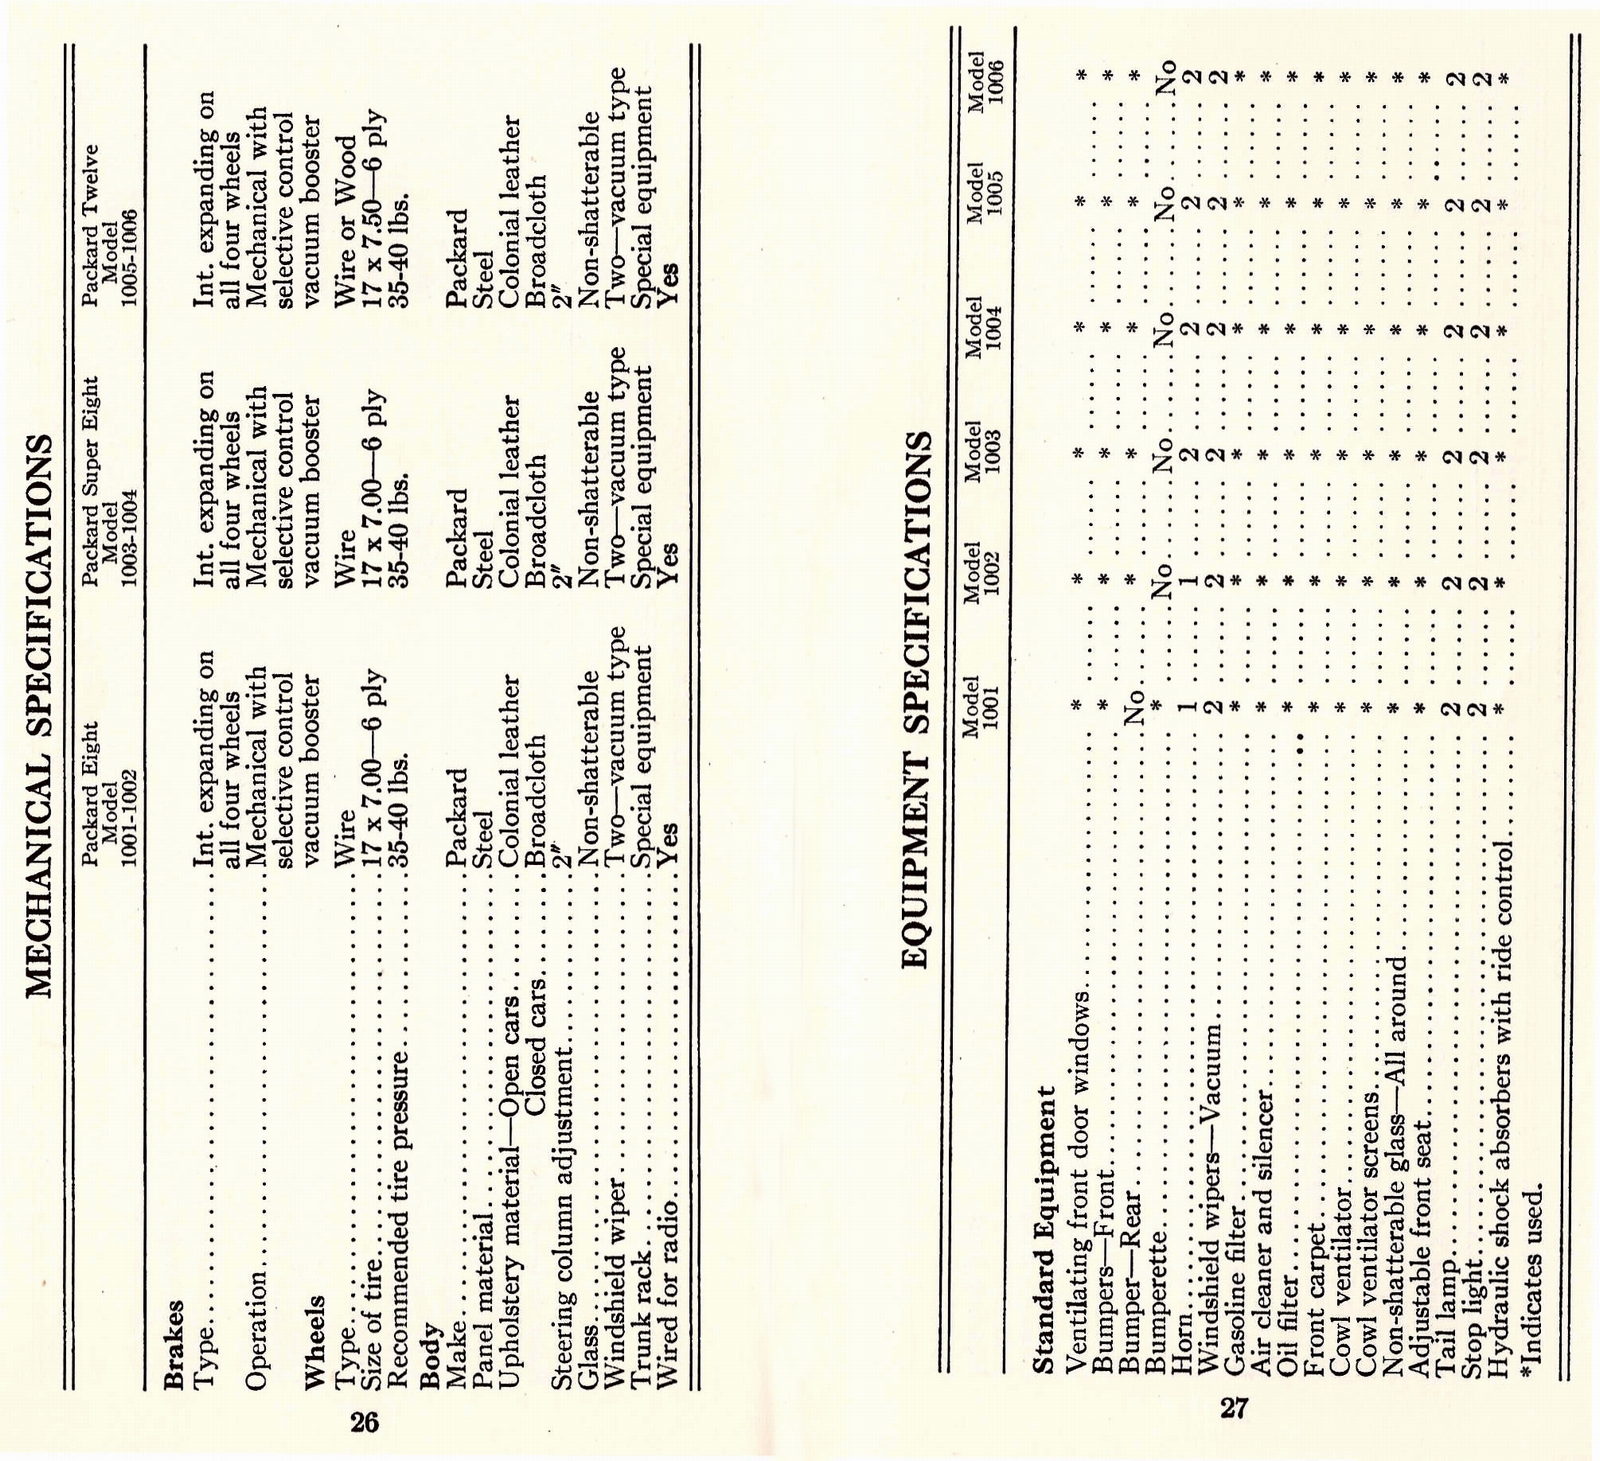 n_1933 Packard Facts Booklet-26-27.jpg